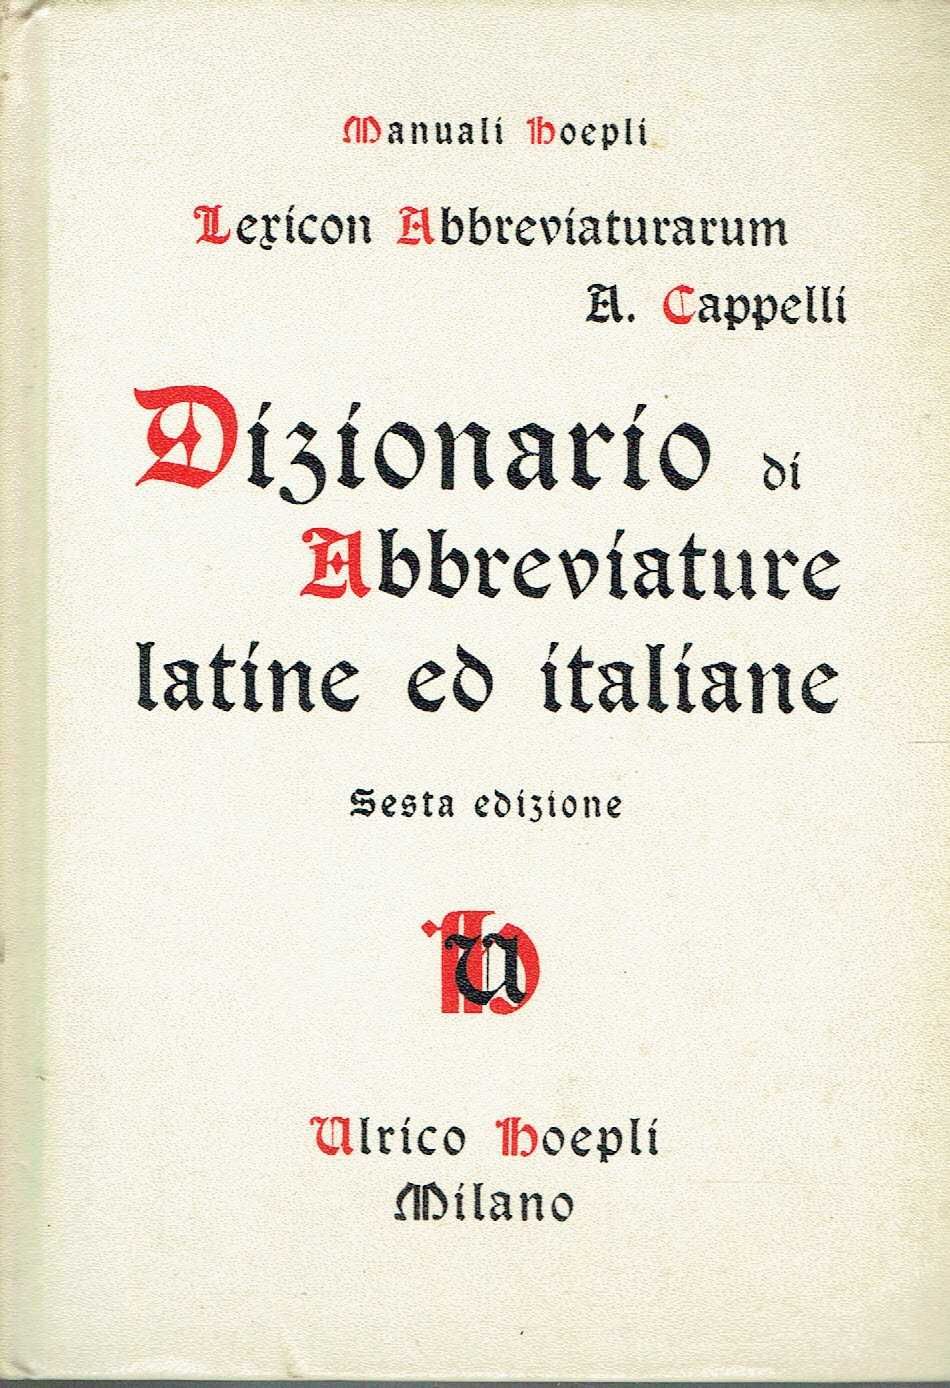 14643
Dizionario di Abbreviature Latine ed iIaliane